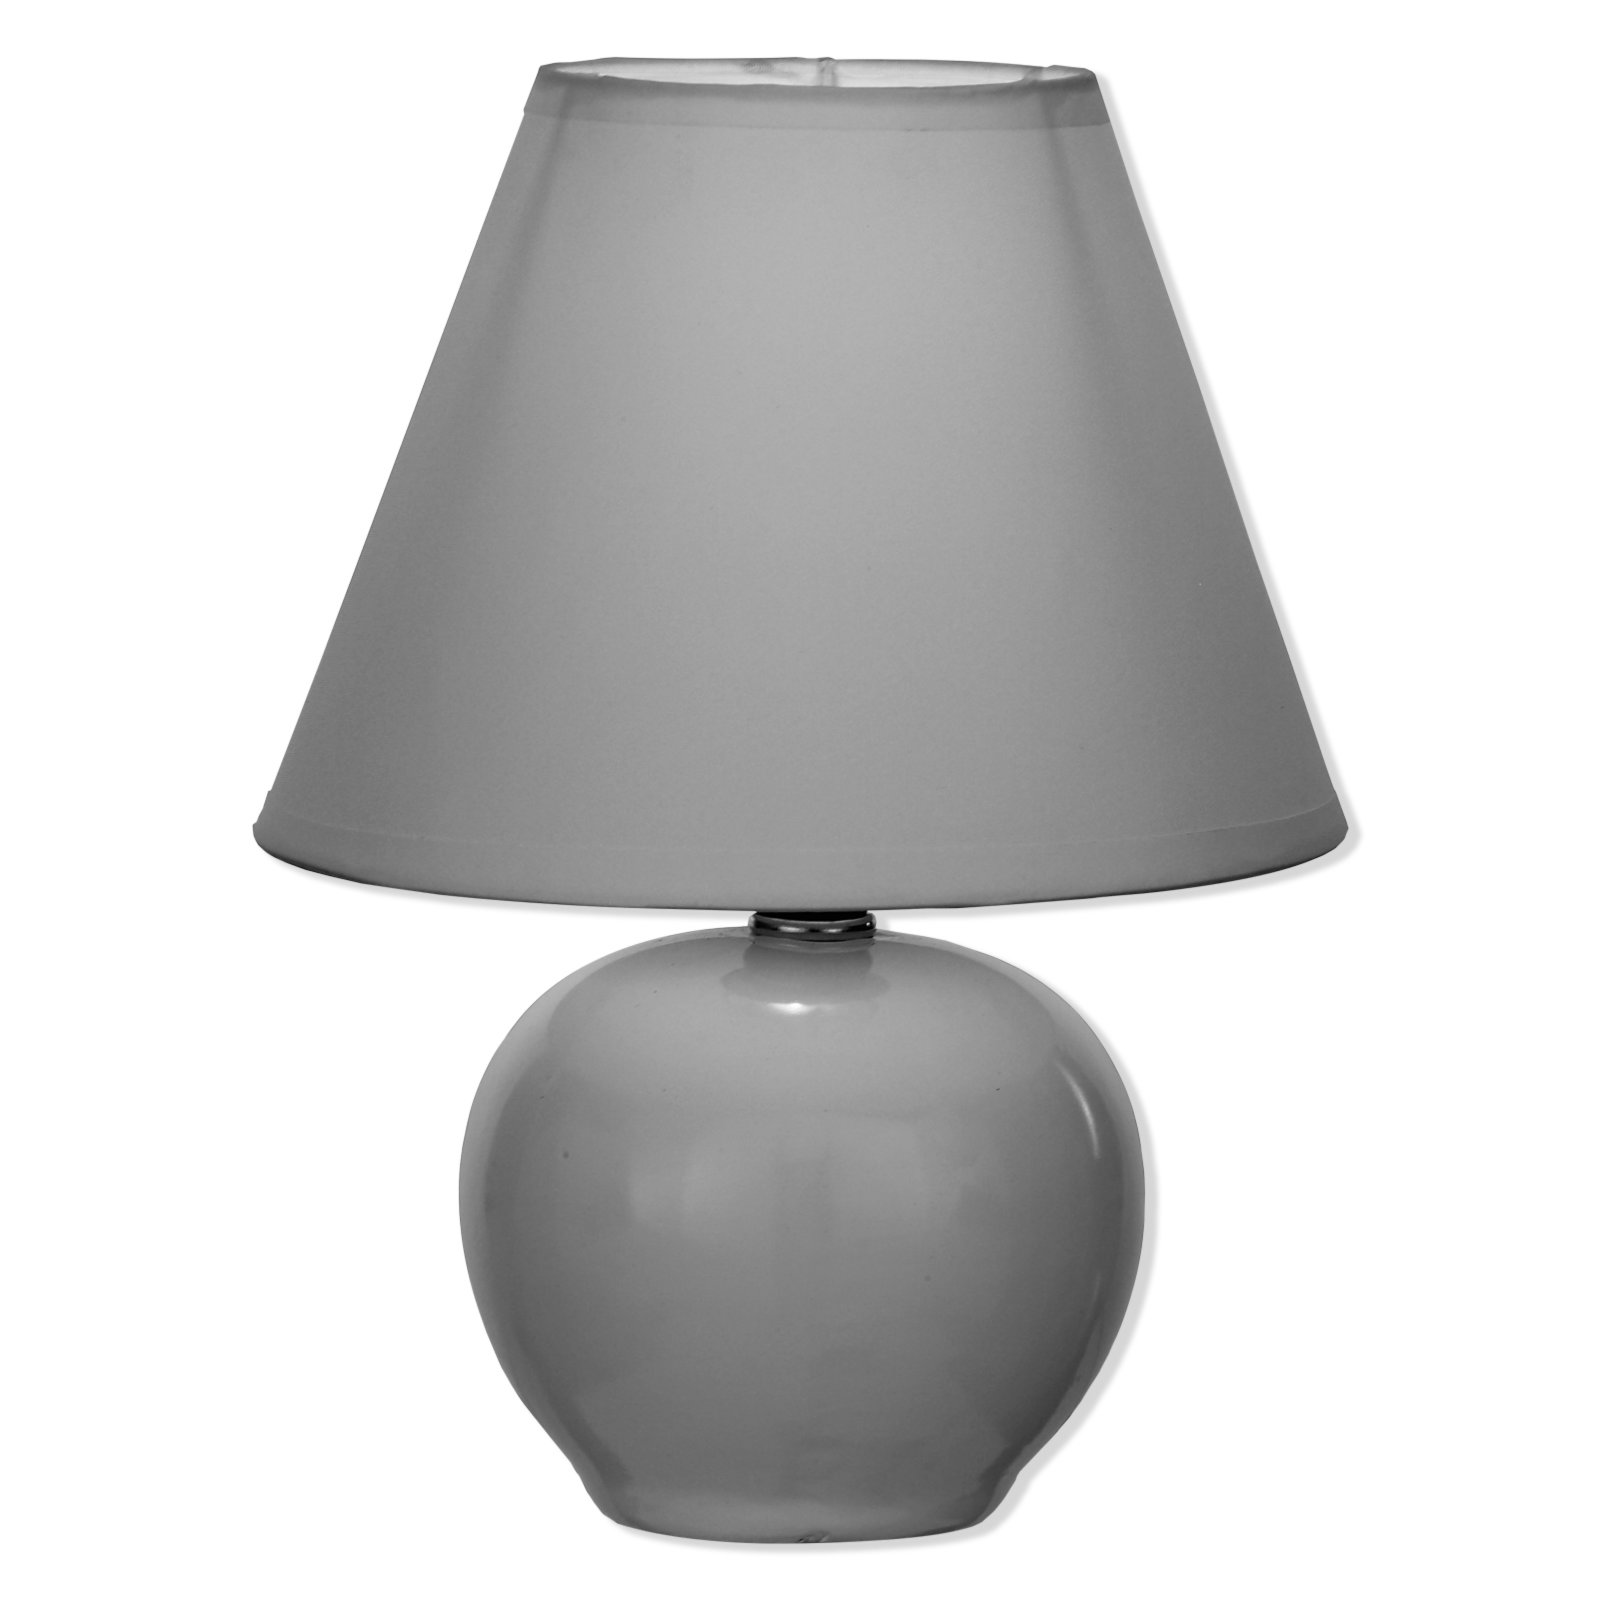 Tischleuchte - grau - Keramik - Ø 20 cm 9007371390847 | eBay